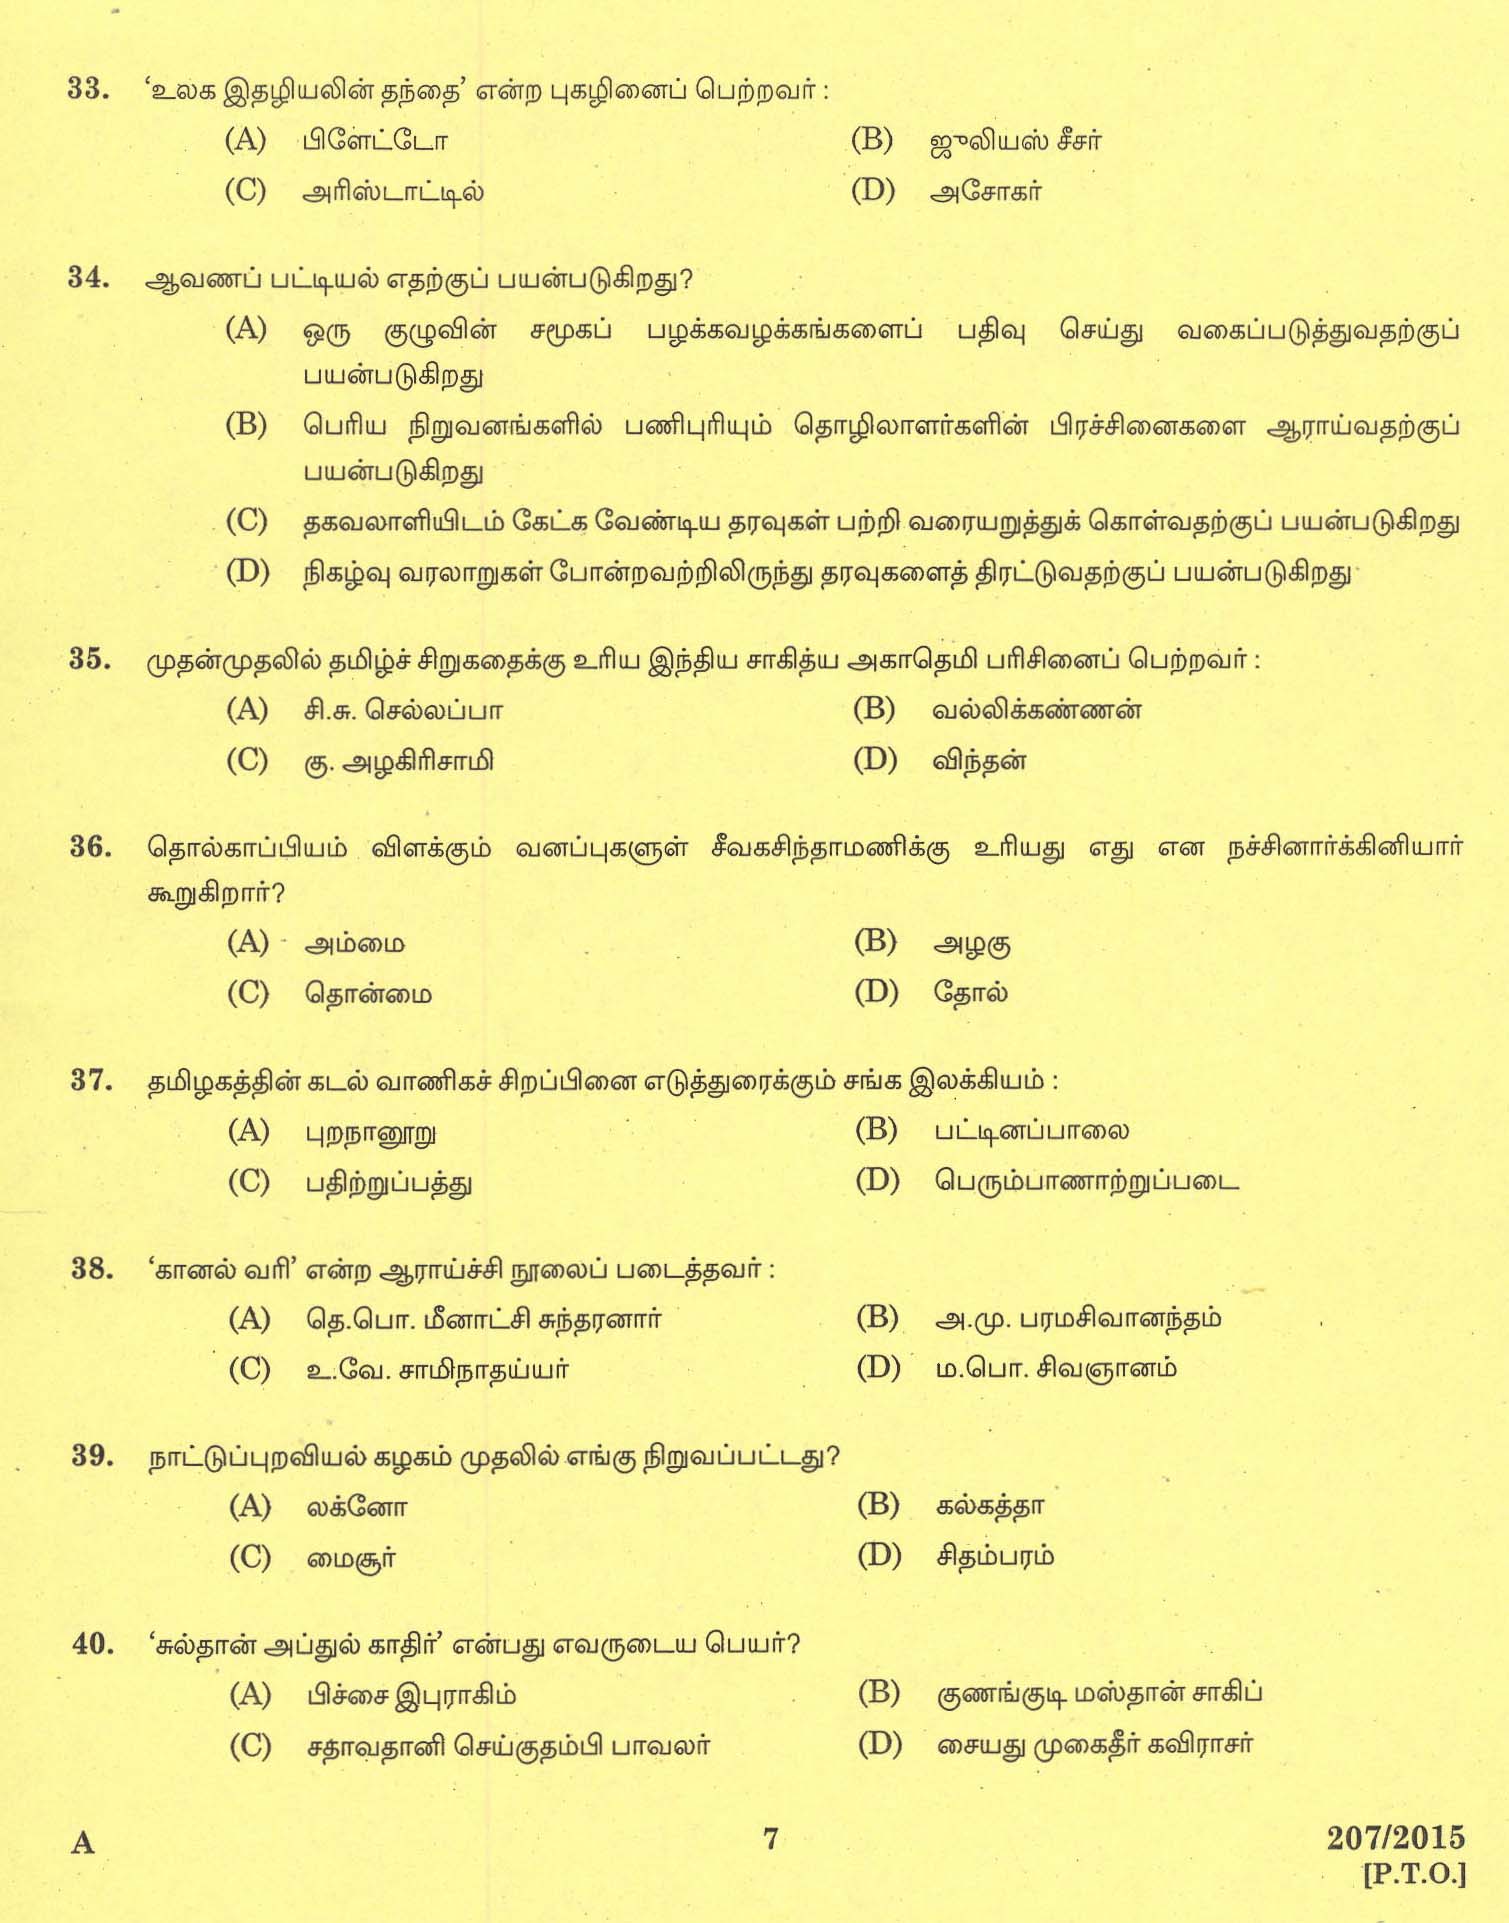 KPSC Lecturer in Tamil Exam 2015 Code 2072015 5